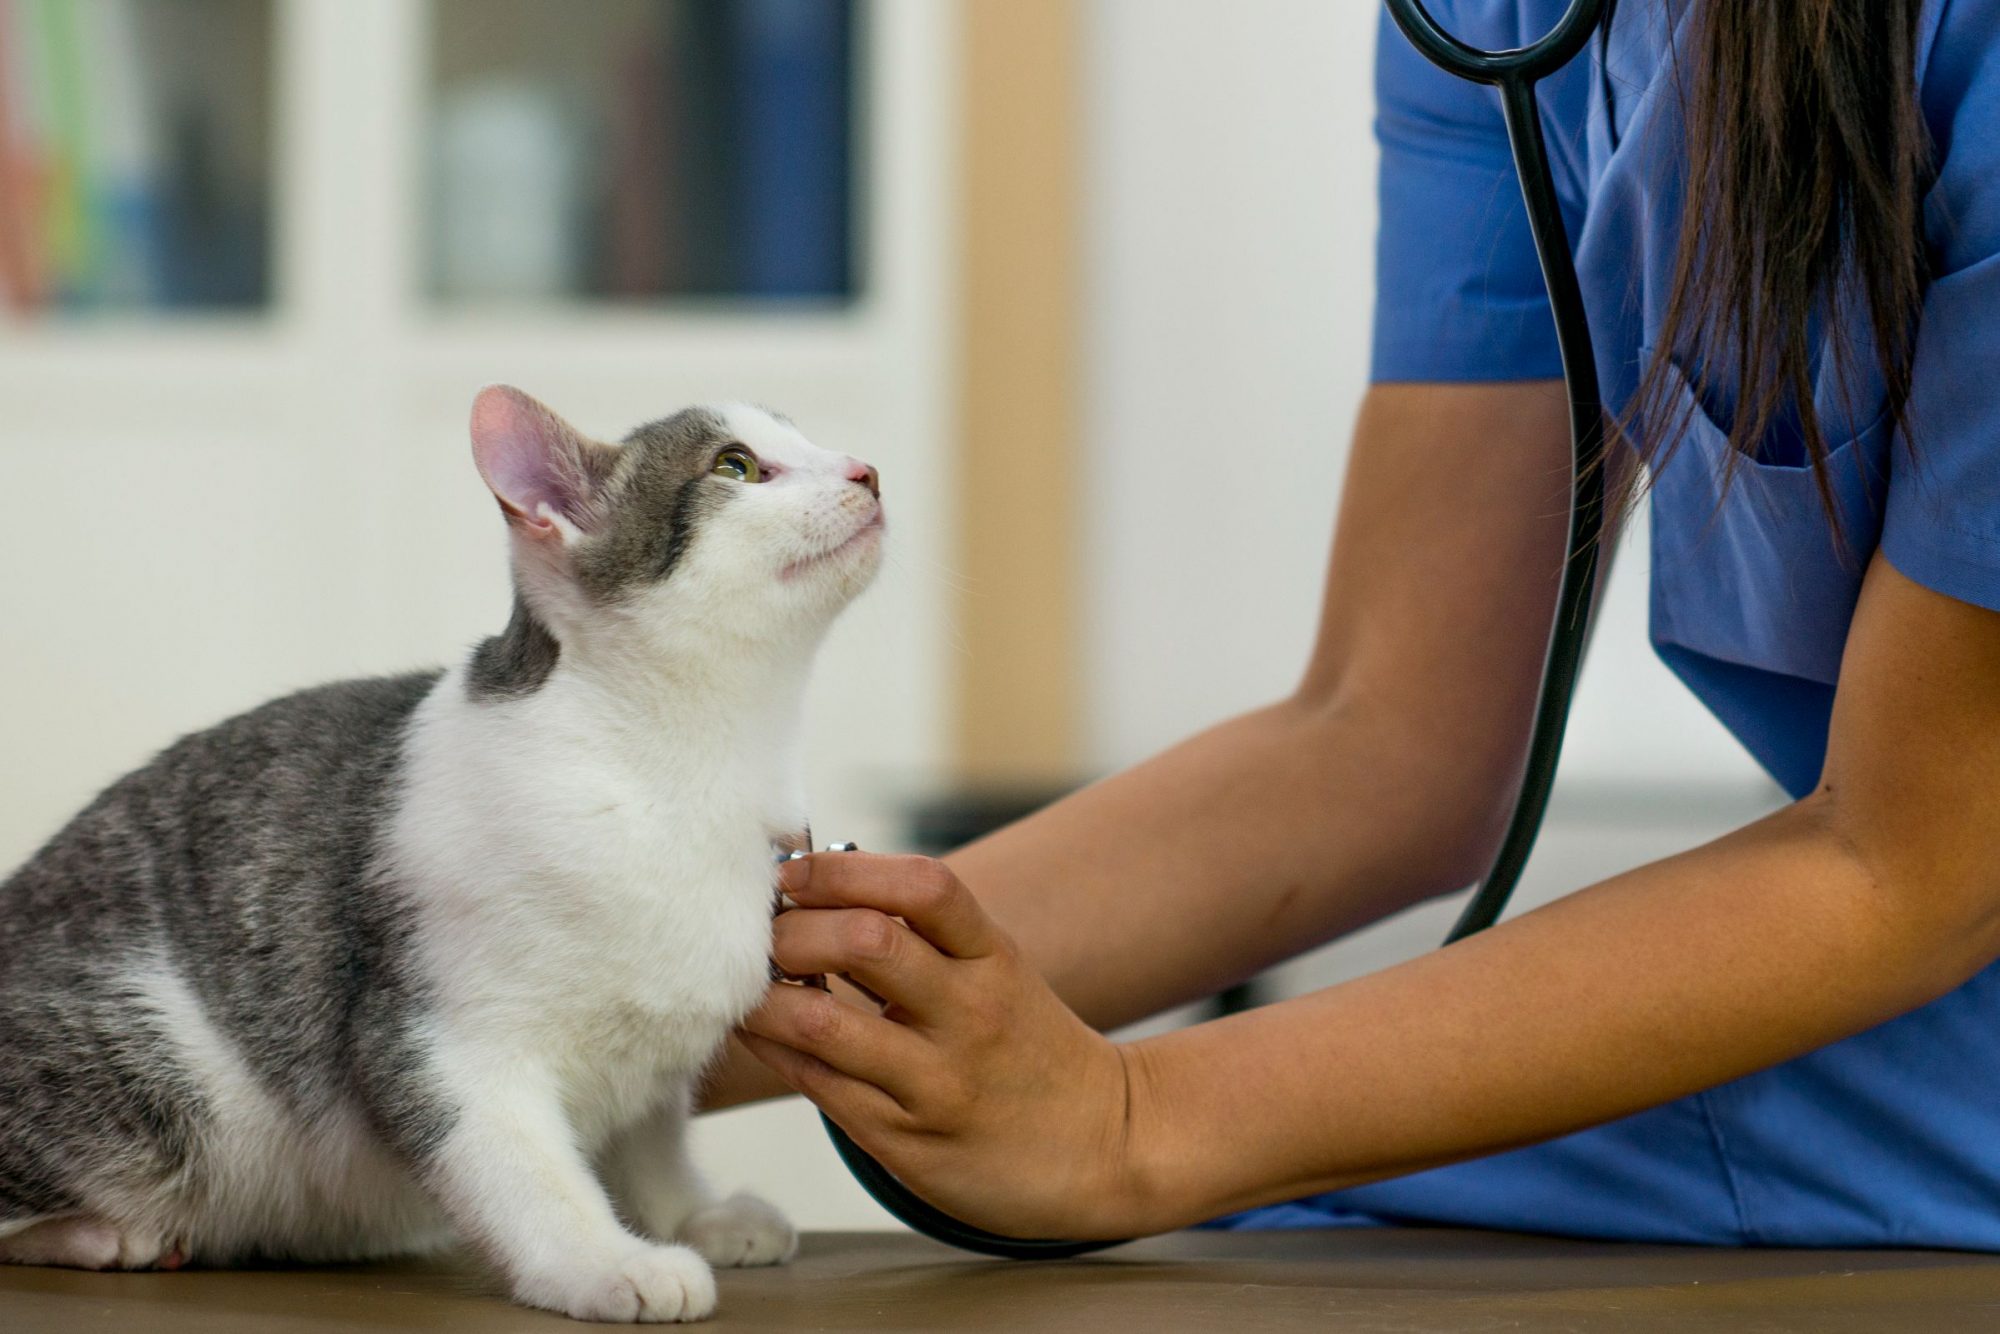 A cat at a vet visit.